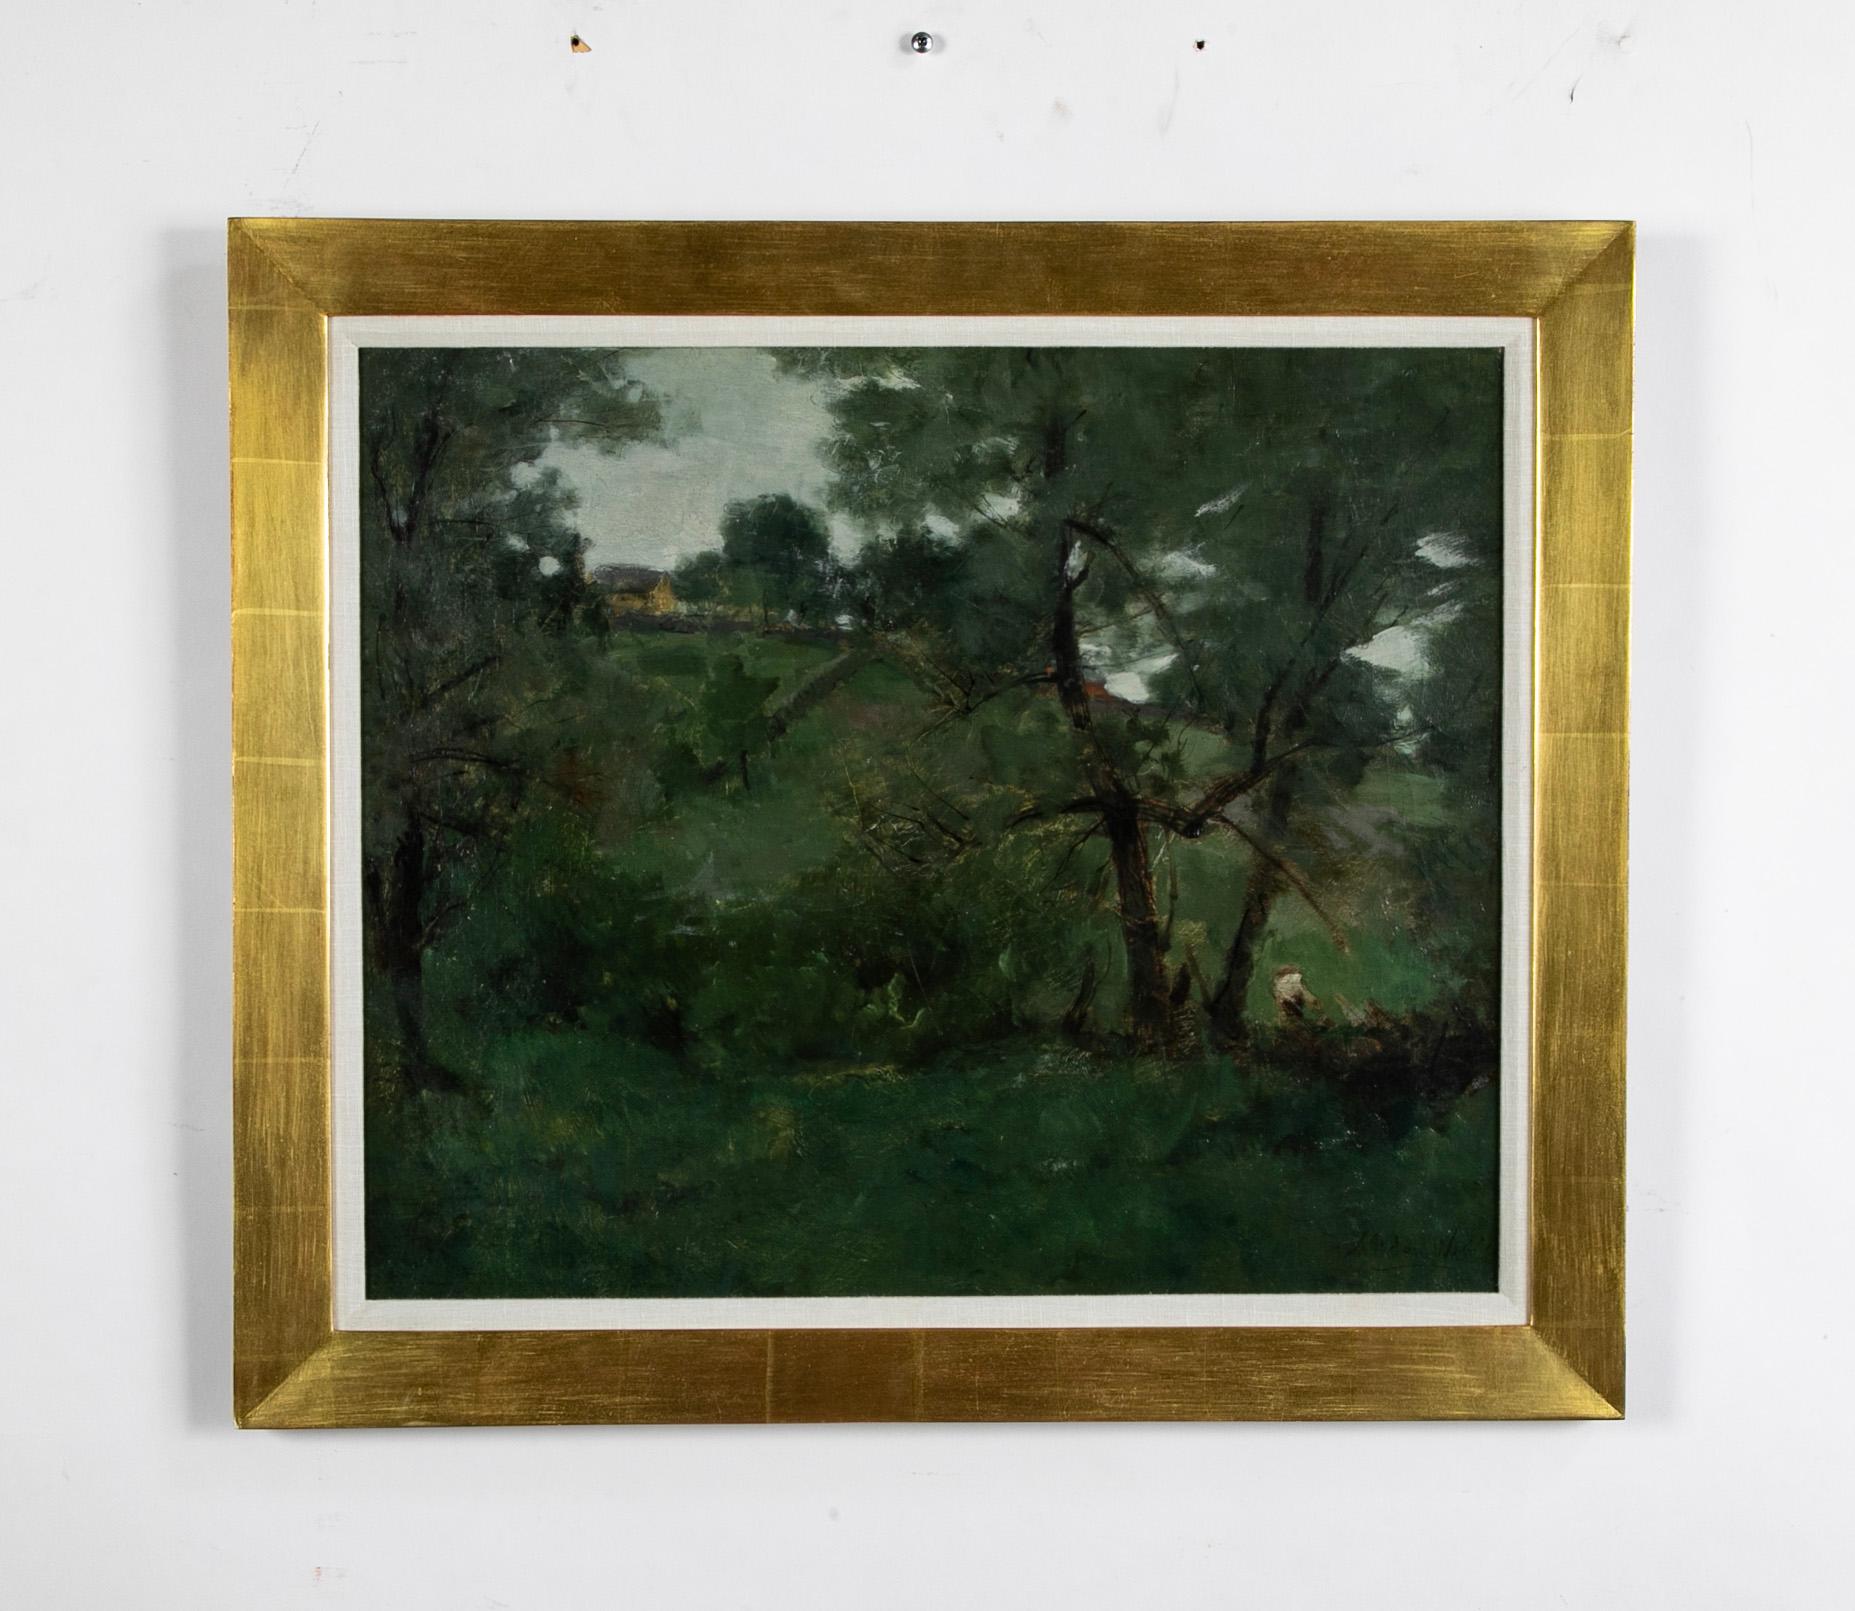 Julian Alden Weir (30 août 1852 - 8 décembre 1919) était un peintre impressionniste américain, membre de la Cos Cob Art Coloni près de Greenwich, Connecticut. Weir est également l'un des membres fondateurs de 